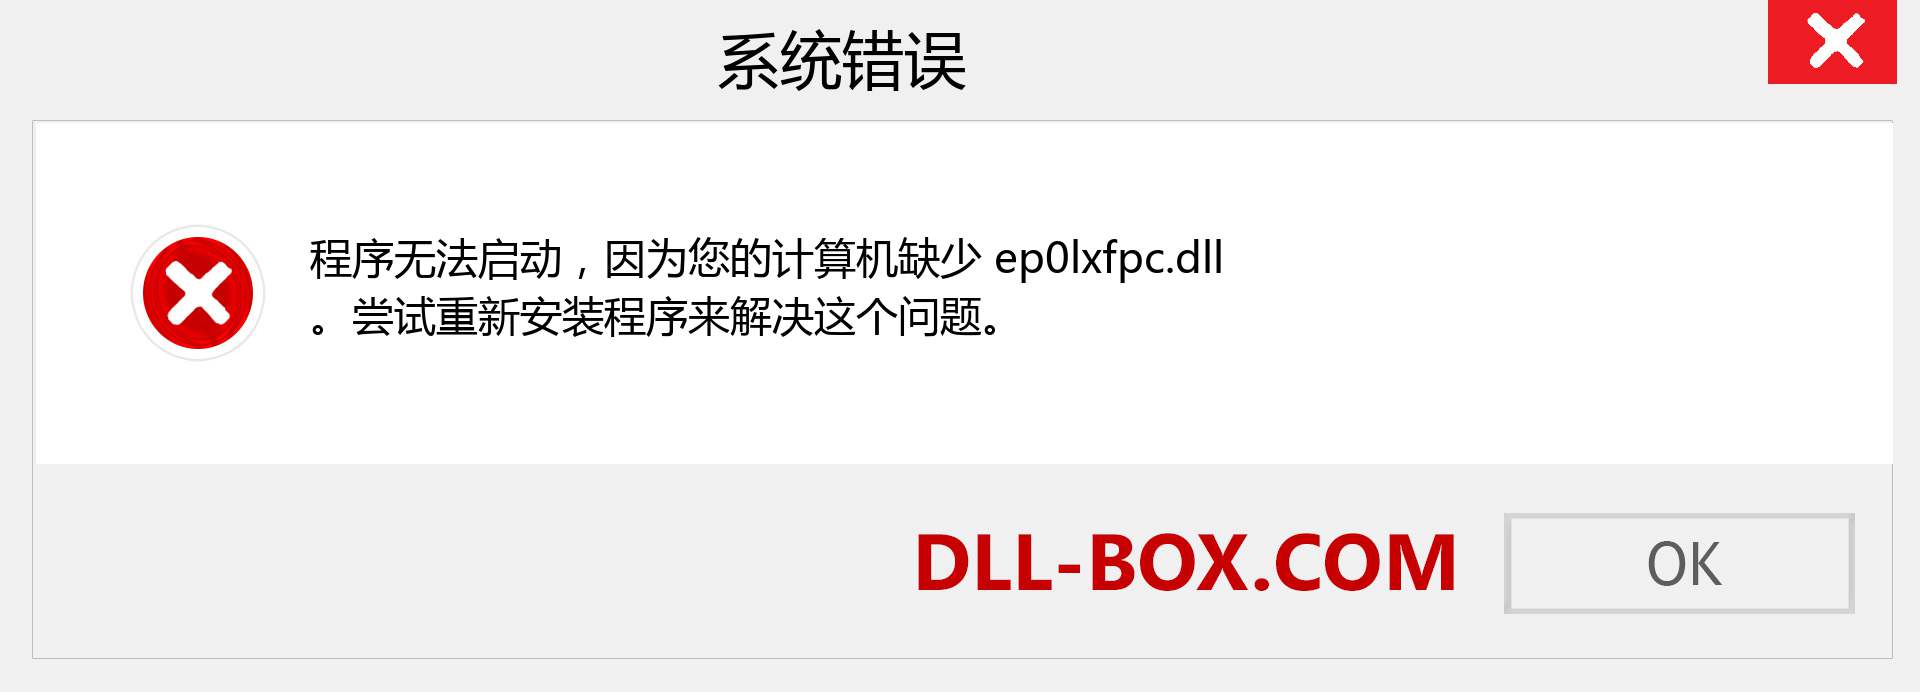 ep0lxfpc.dll 文件丢失？。 适用于 Windows 7、8、10 的下载 - 修复 Windows、照片、图像上的 ep0lxfpc dll 丢失错误